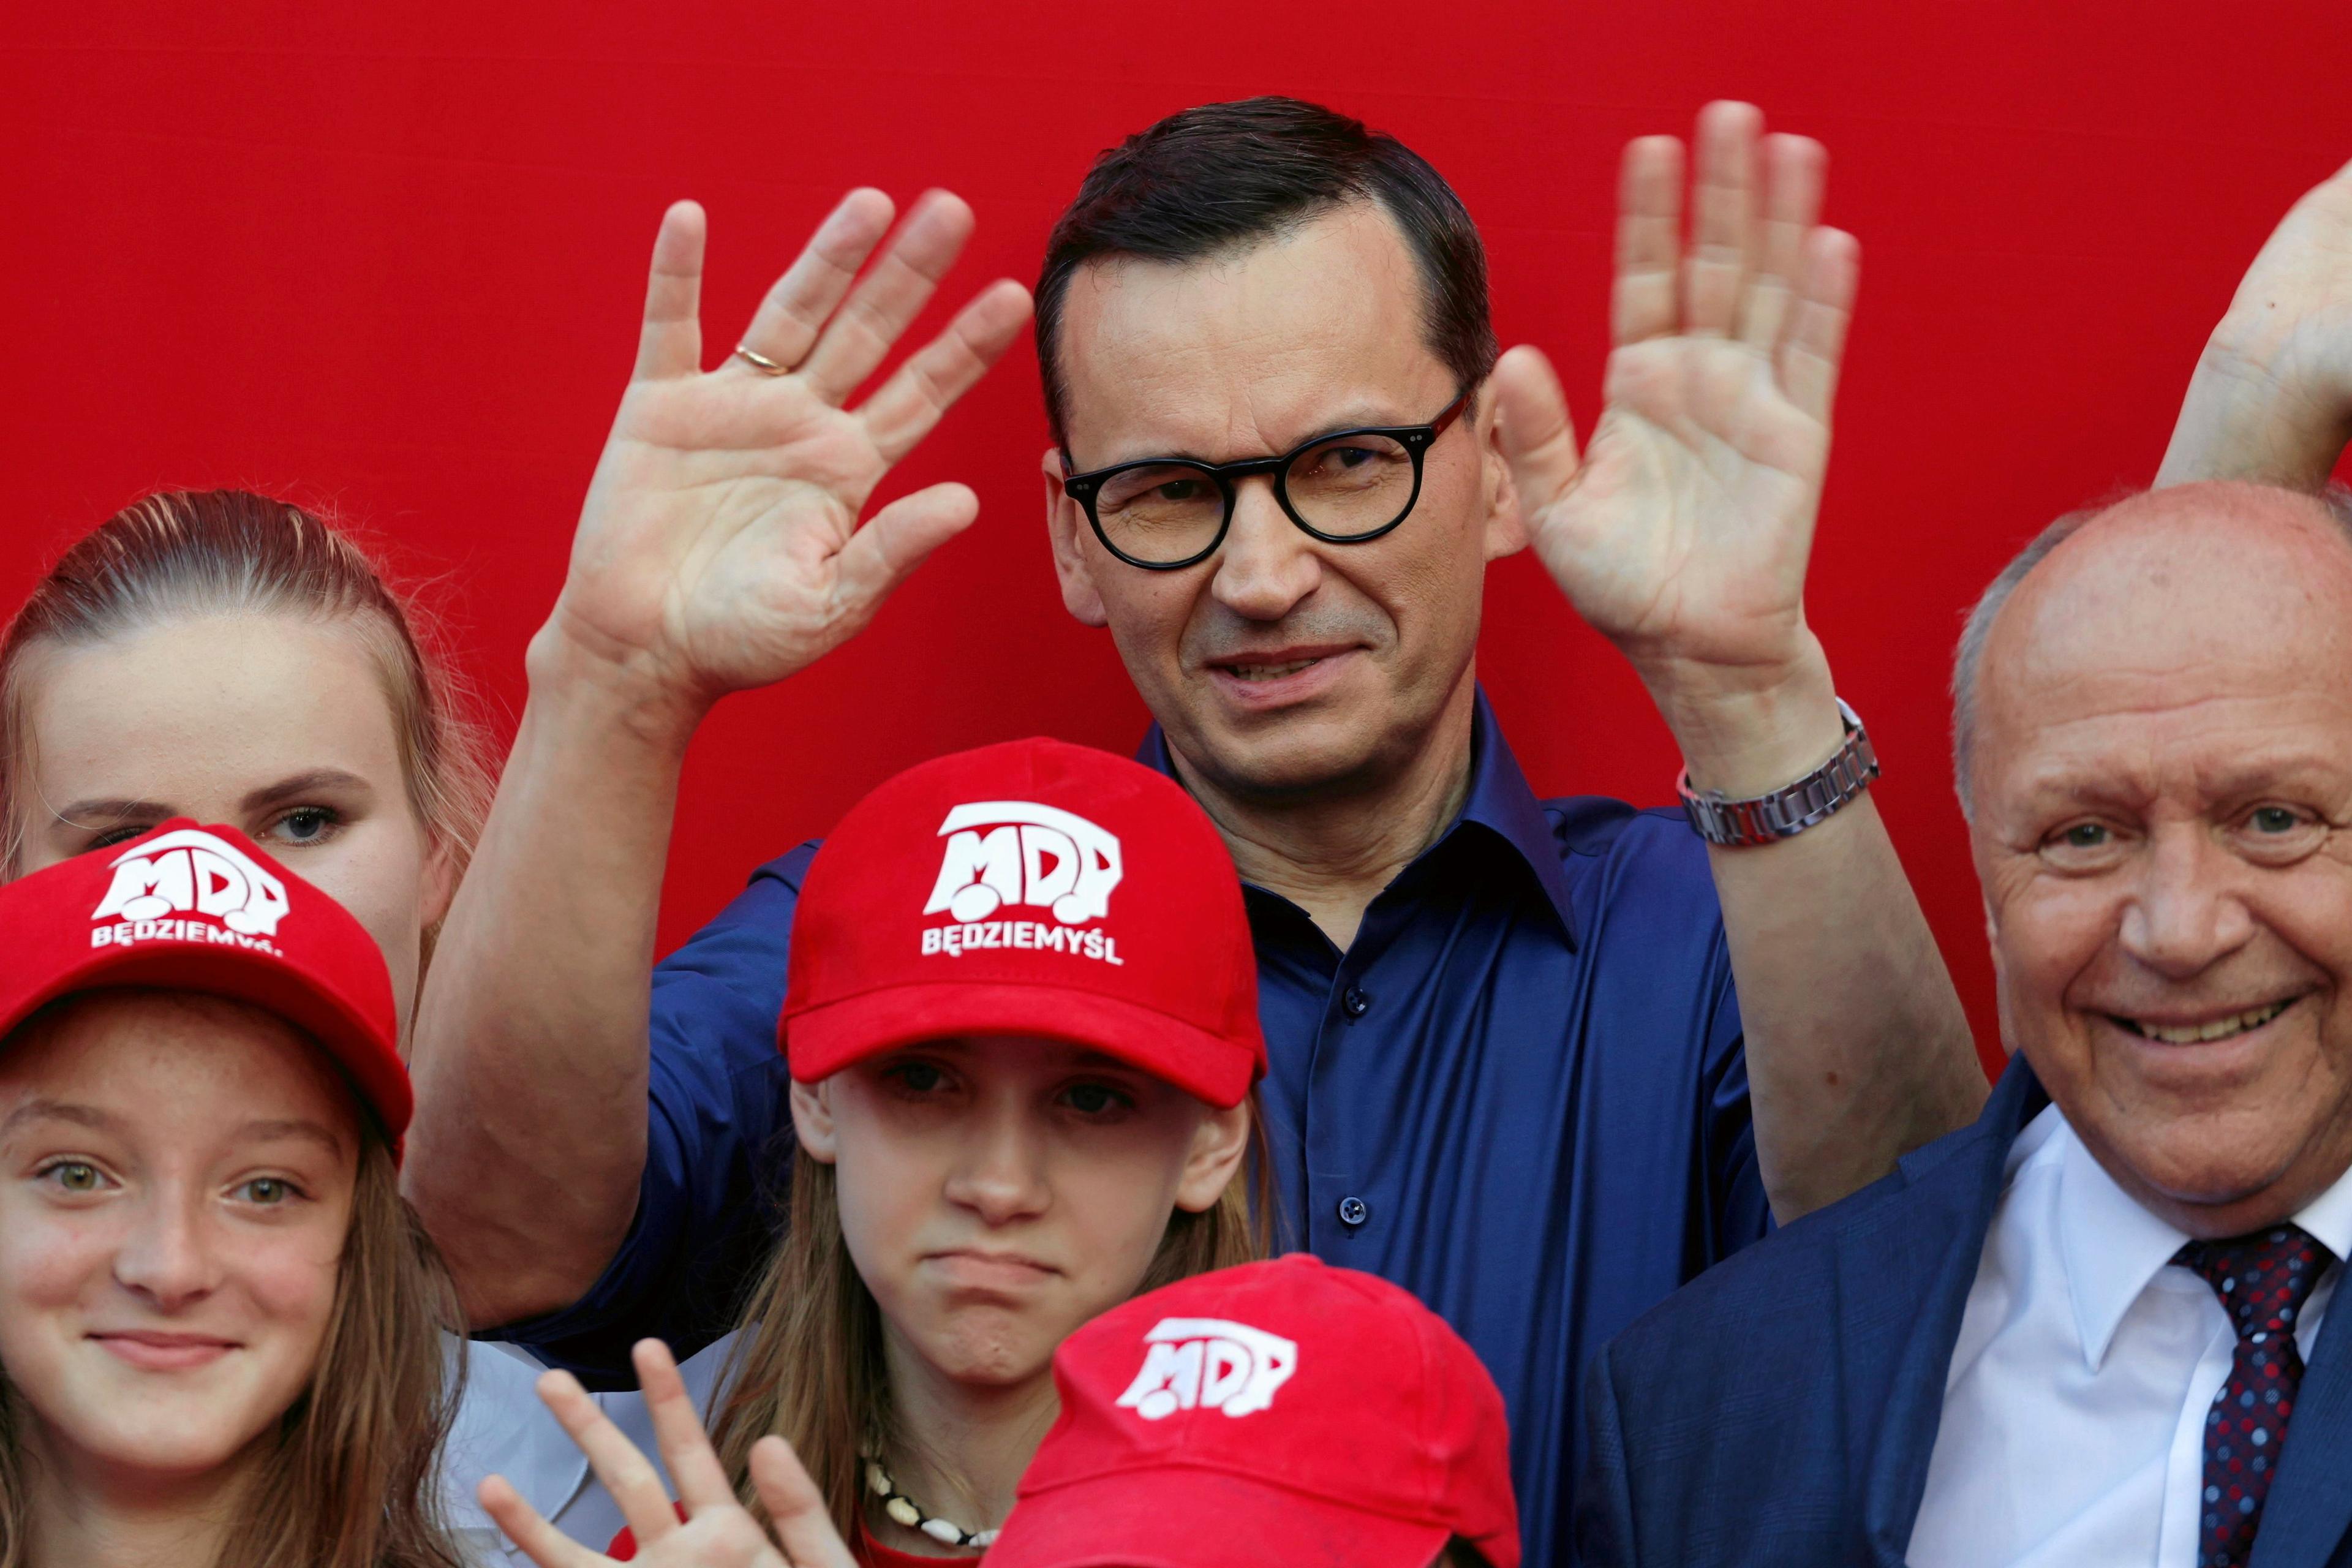 Premier Mateusz Morawiecki w niebieskiej koszuli macha do kamery na tle czerwonej ściany razem z dziećmi i innym mężczyzną